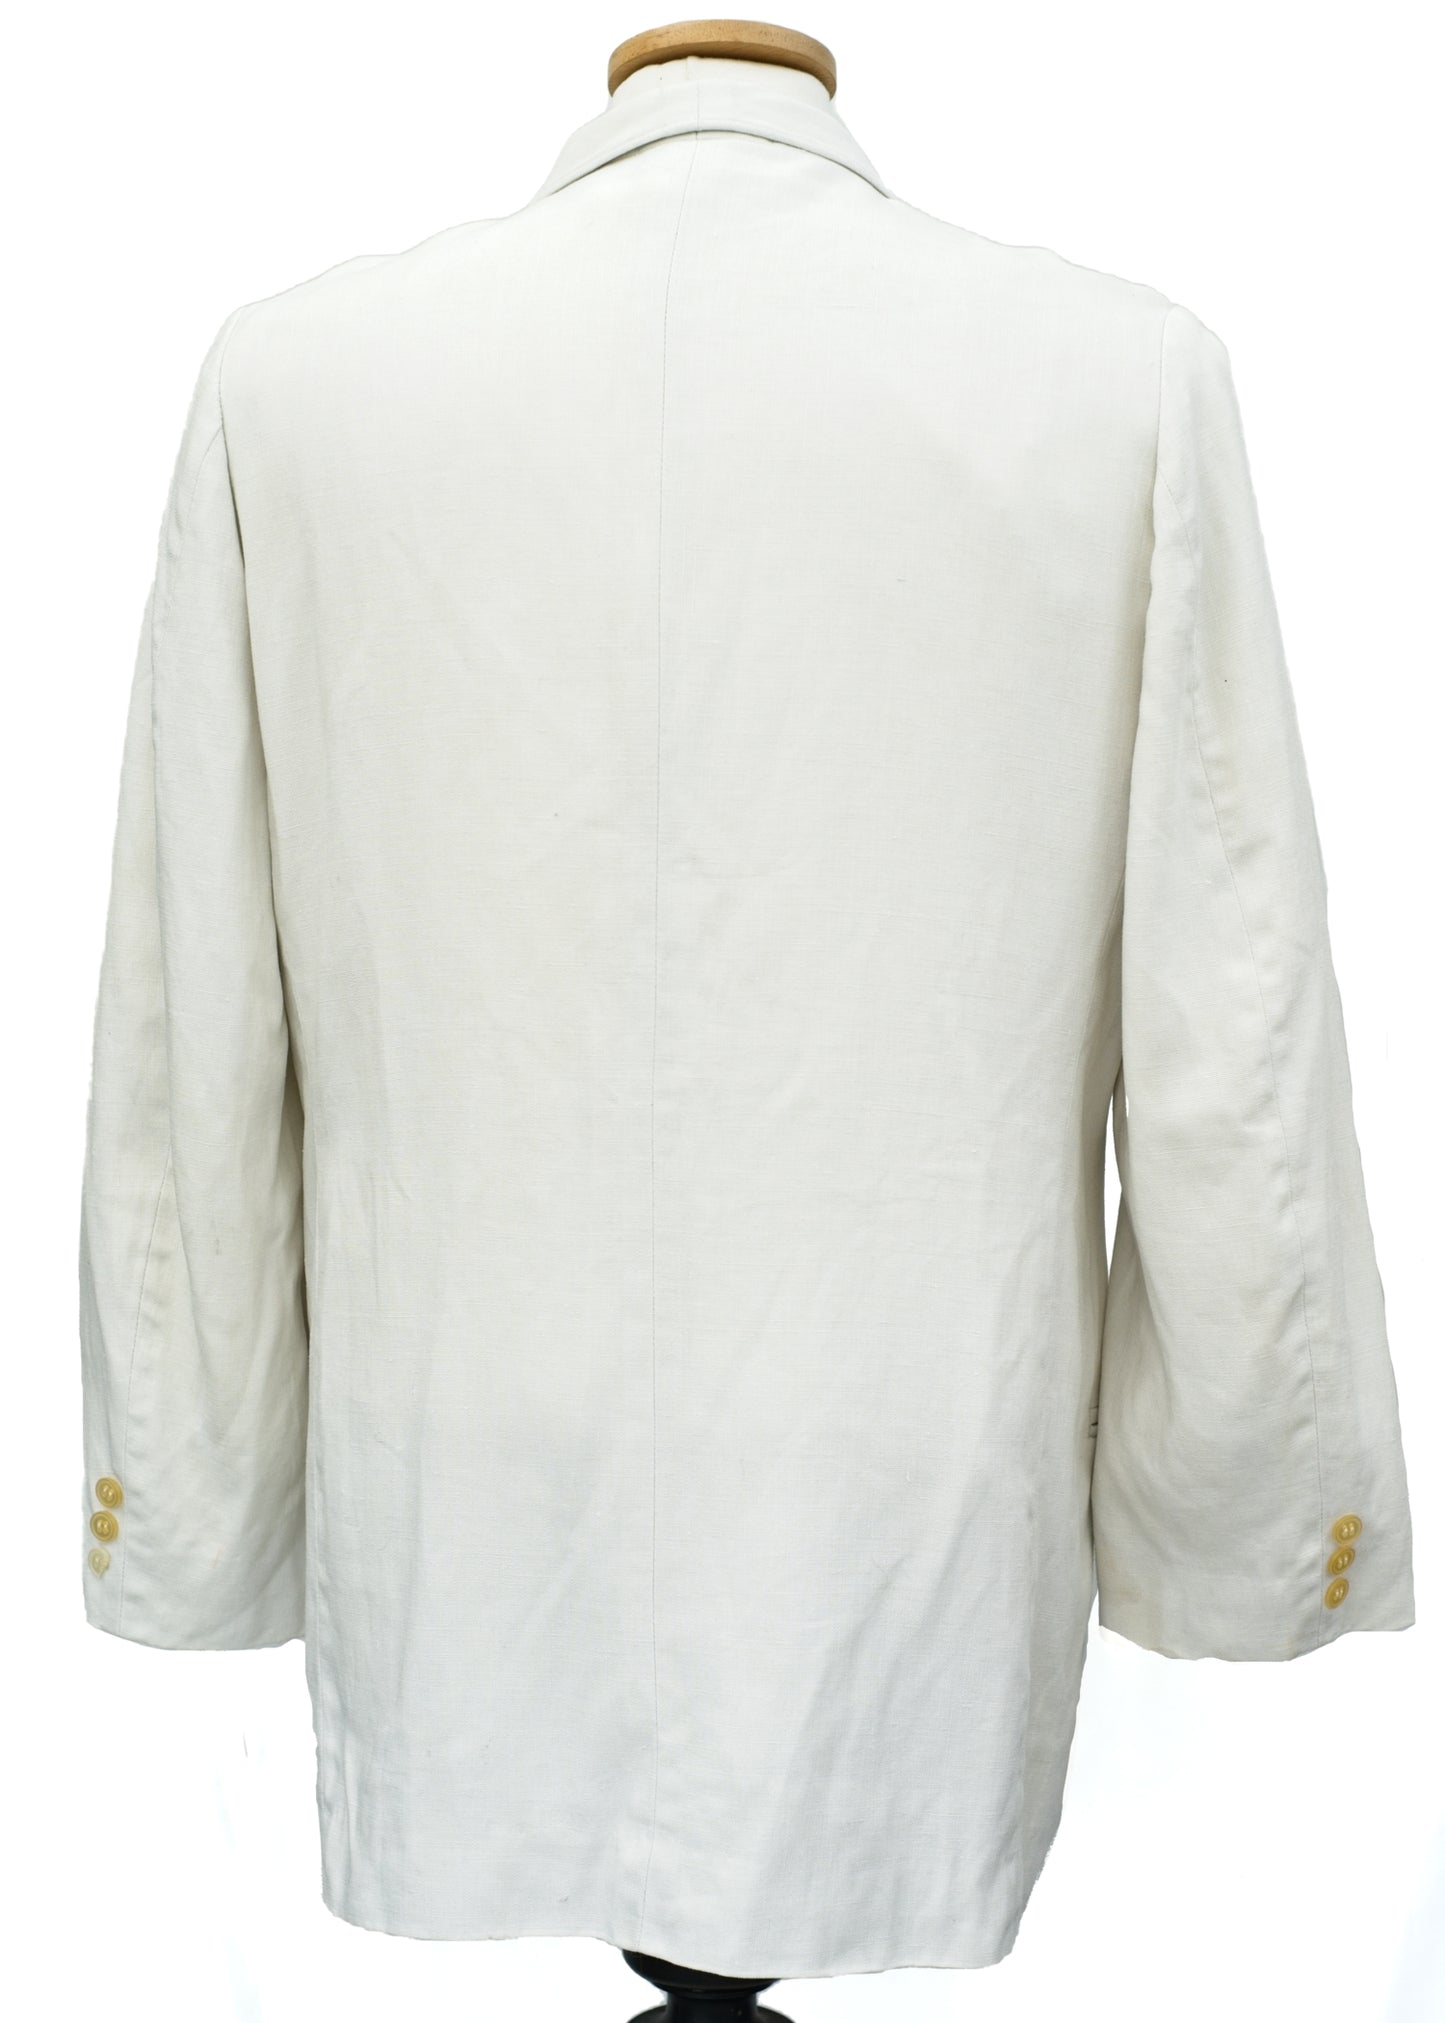 1940s Vintage White Linen Shawl Collar Tuxedo Dinner Jacket • 38R Chest